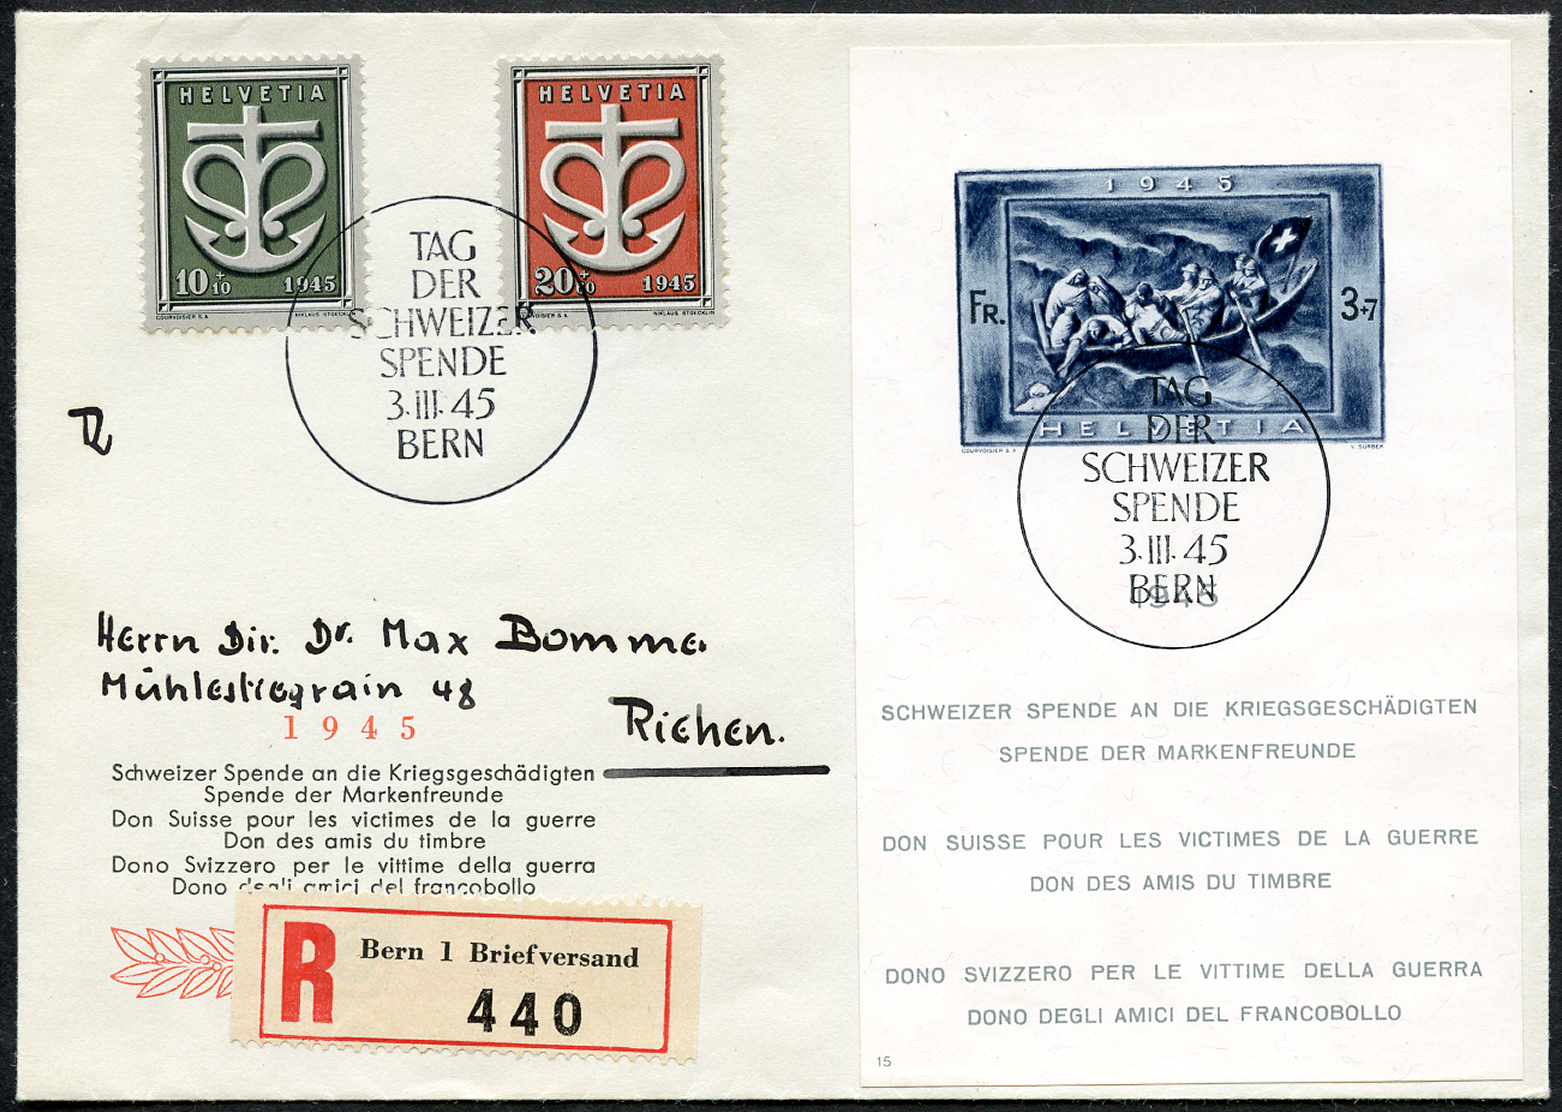 Bild-1: W21,W19-W20 - 1945, Spendeblock und Sondermarken Schweizer Kriegs-Spende